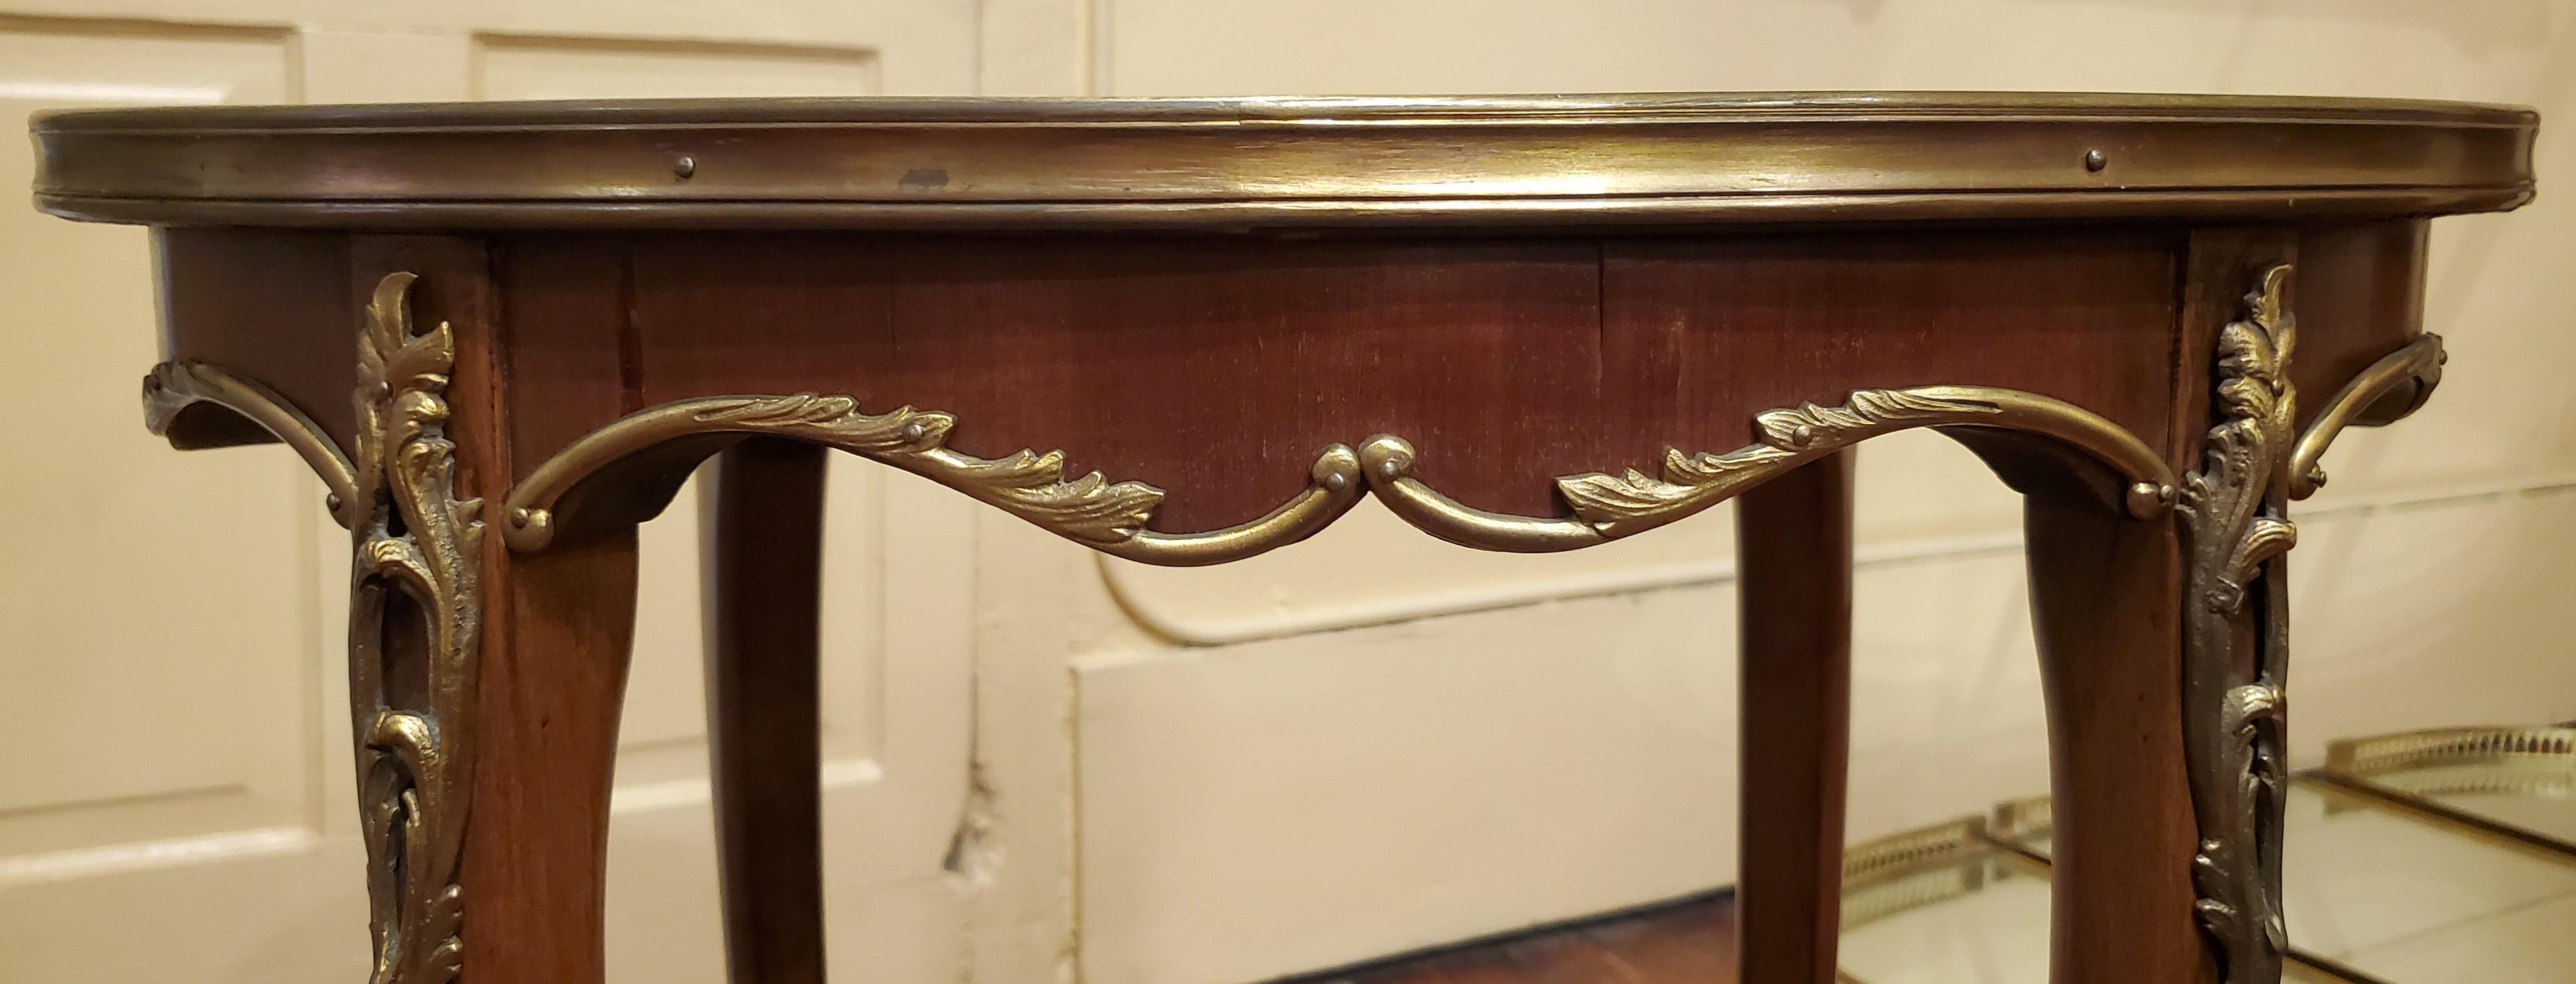 Table d'appoint ancienne Napoléon III en acajou et bronze doré. Cette table est de forme ovale.